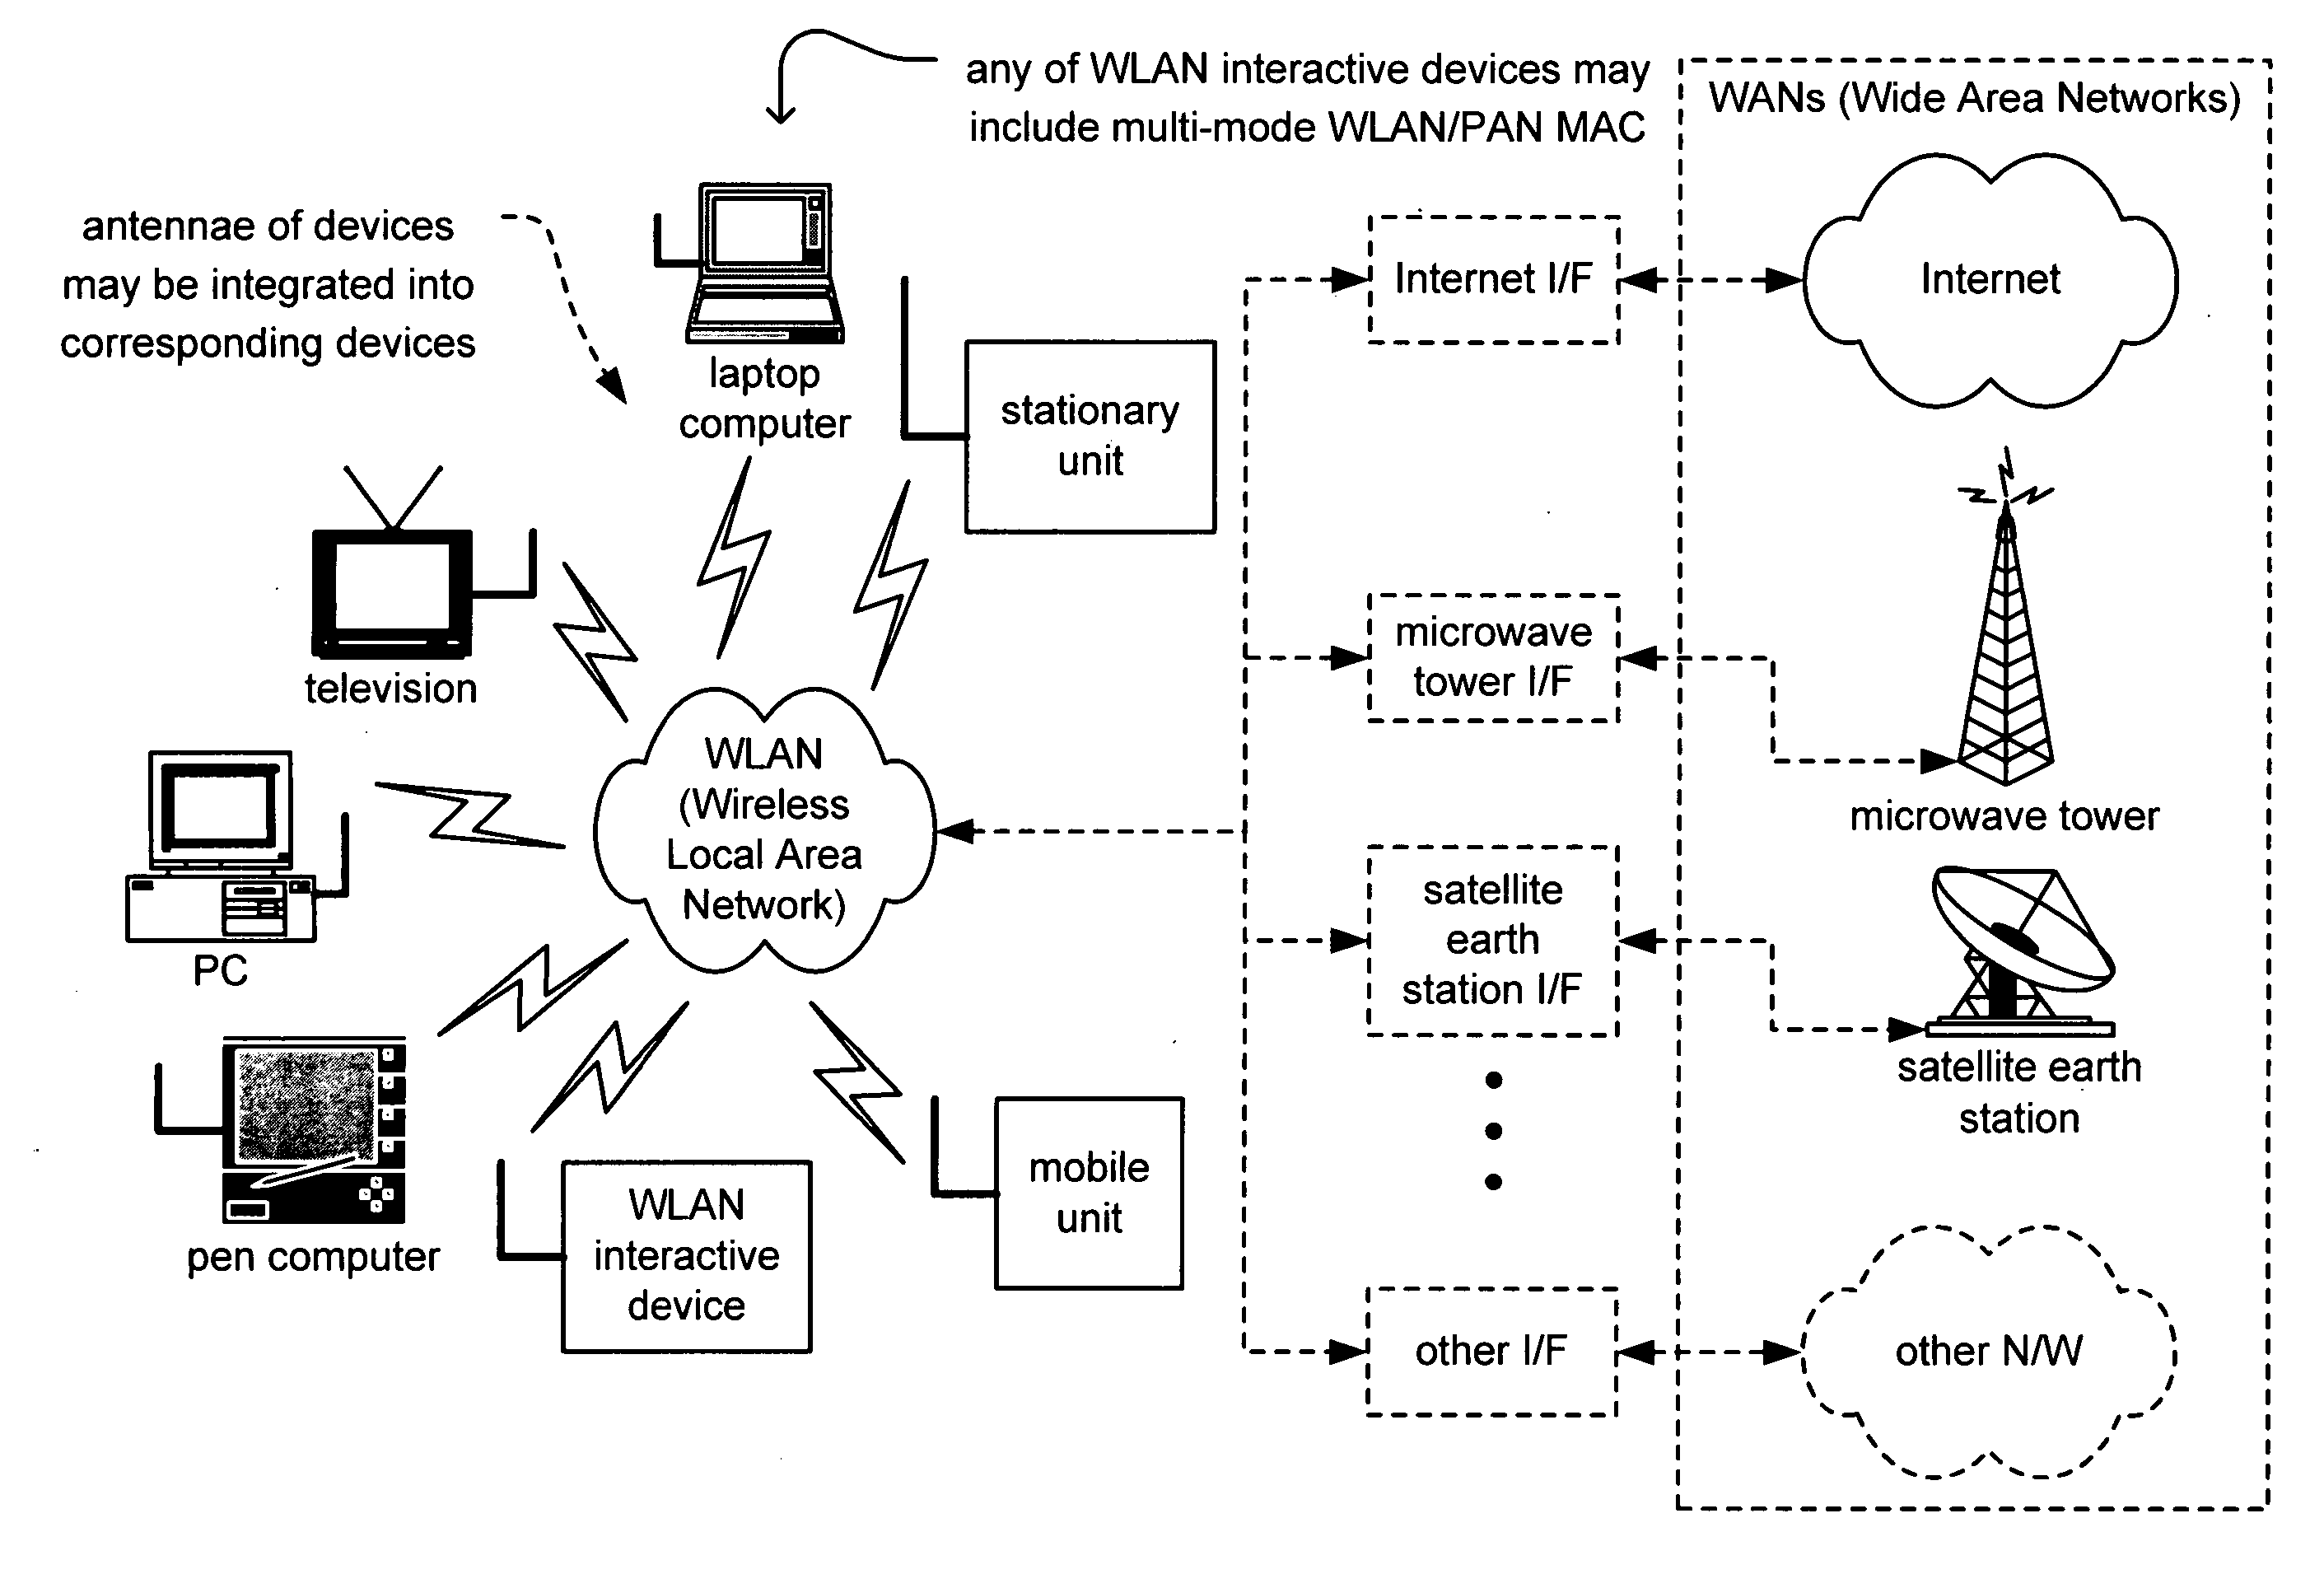 Multi-mode WLAN/PAN MAC